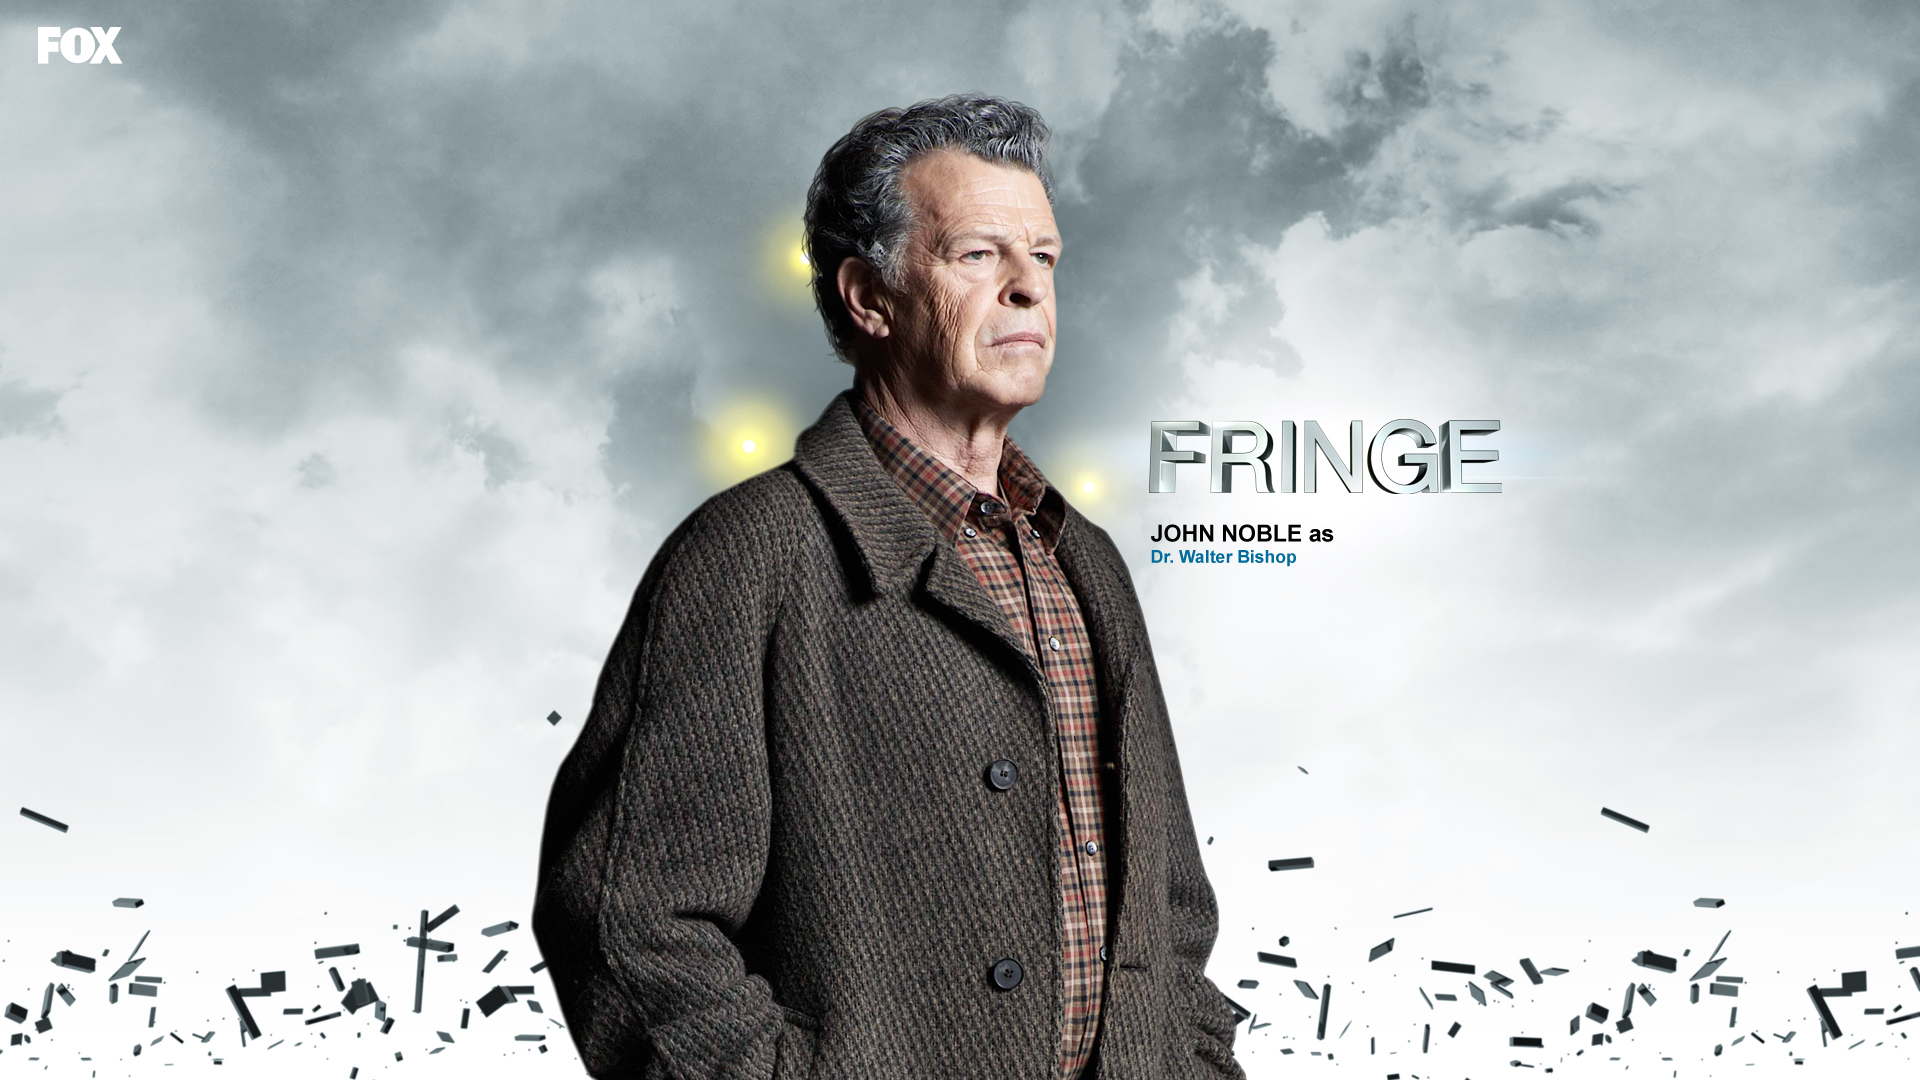 TV Show Fringe HD Wallpaper | Background Image